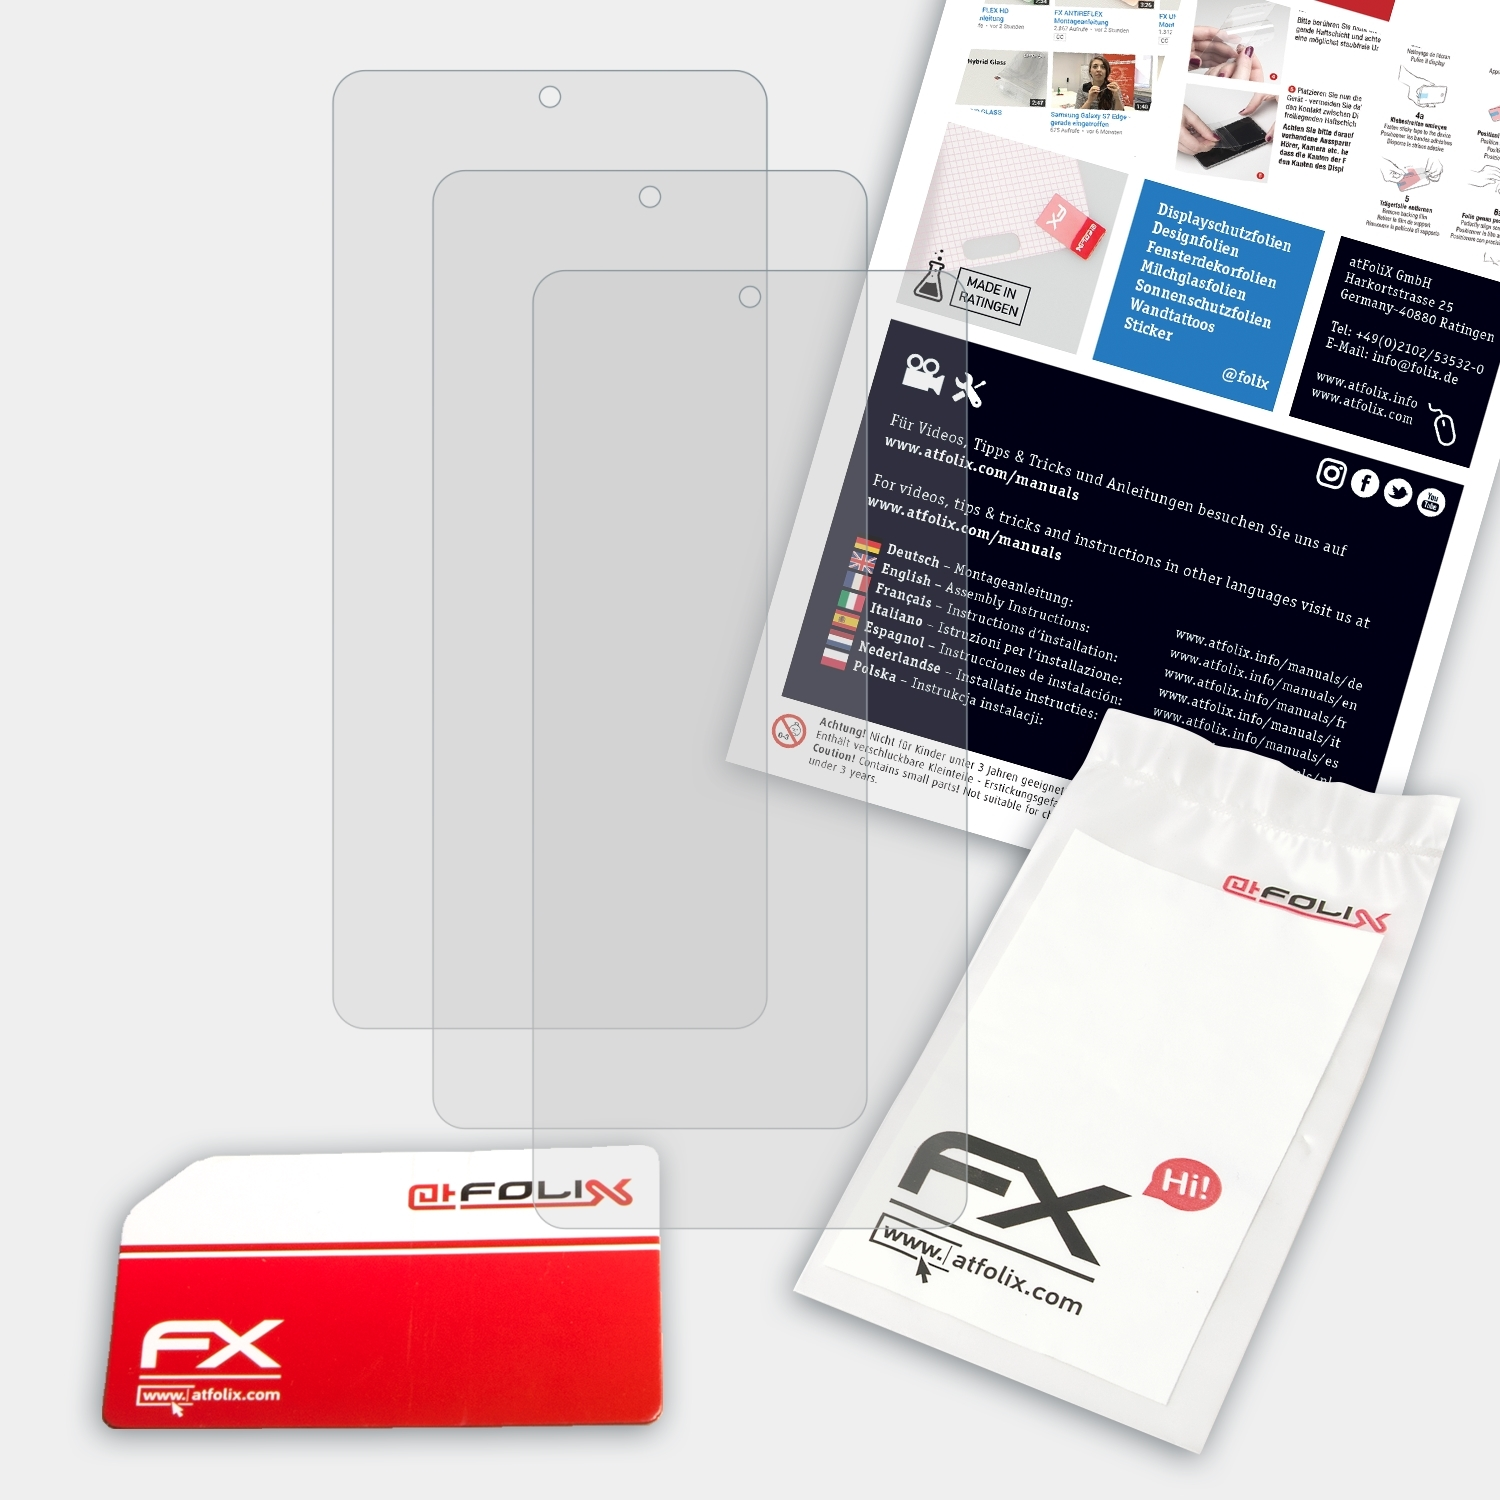 ATFOLIX 3x FX-Antireflex Displayschutz(für Redmi Xiaomi K40)